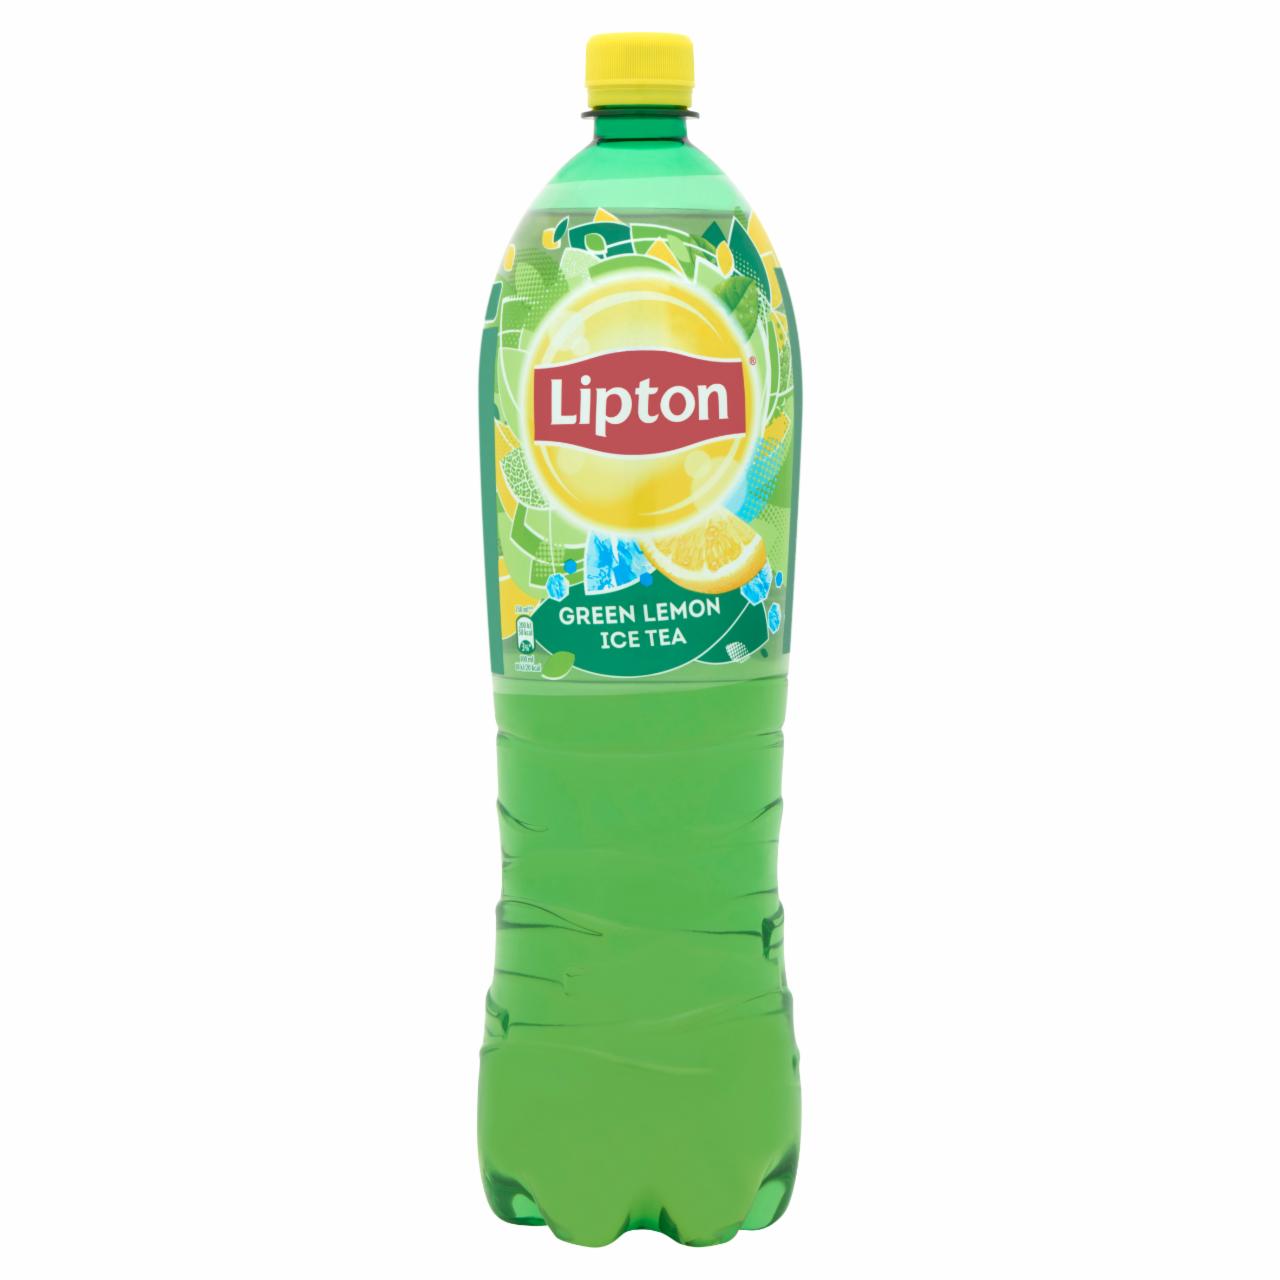 Képek - Lipton Ice Tea Green, citrom ízű csökkentett energiatartalmú 1,5 l